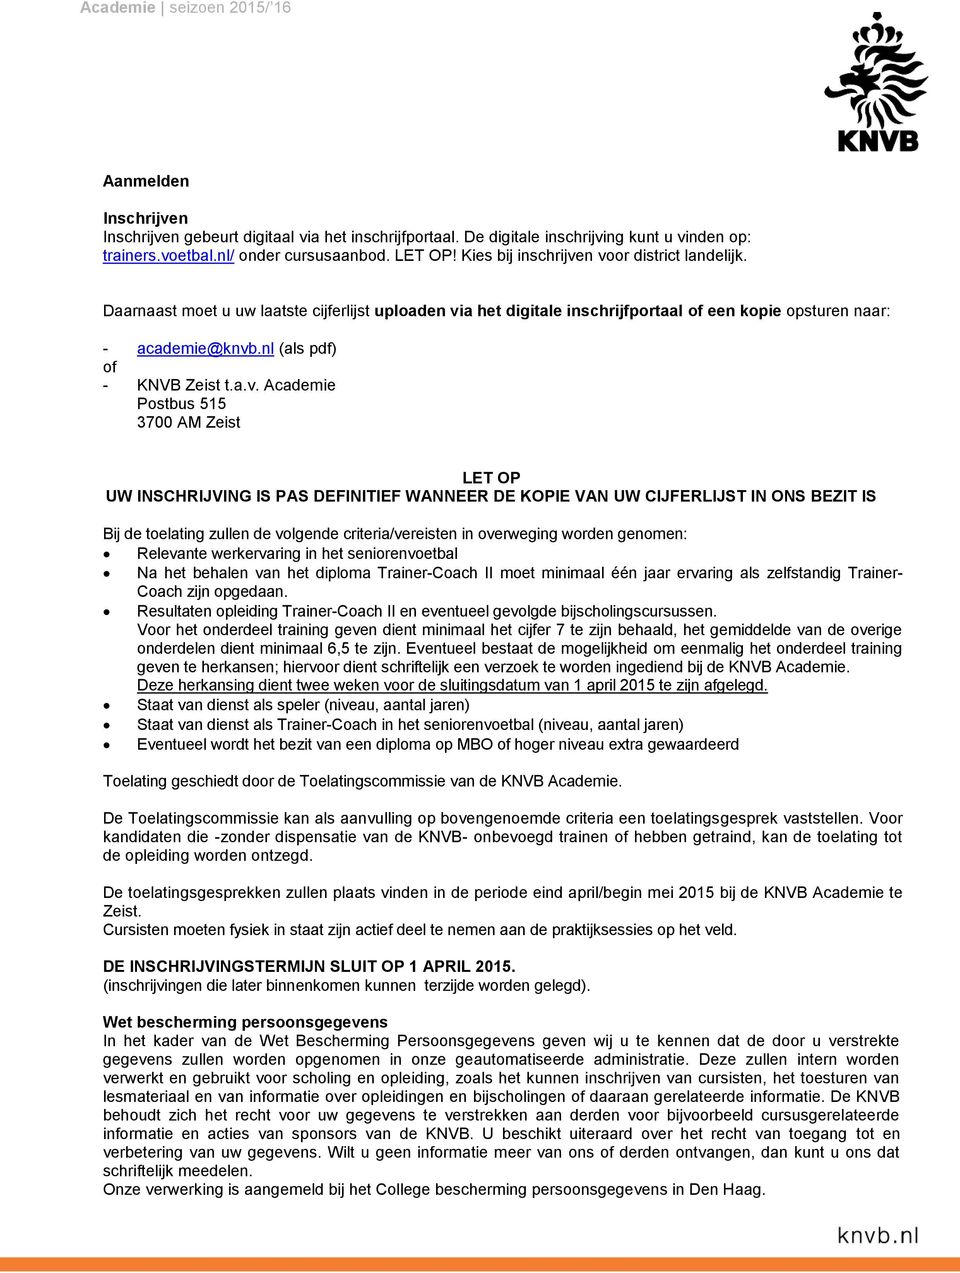 nl (als pdf) of - KNVB Zeist t.a.v.